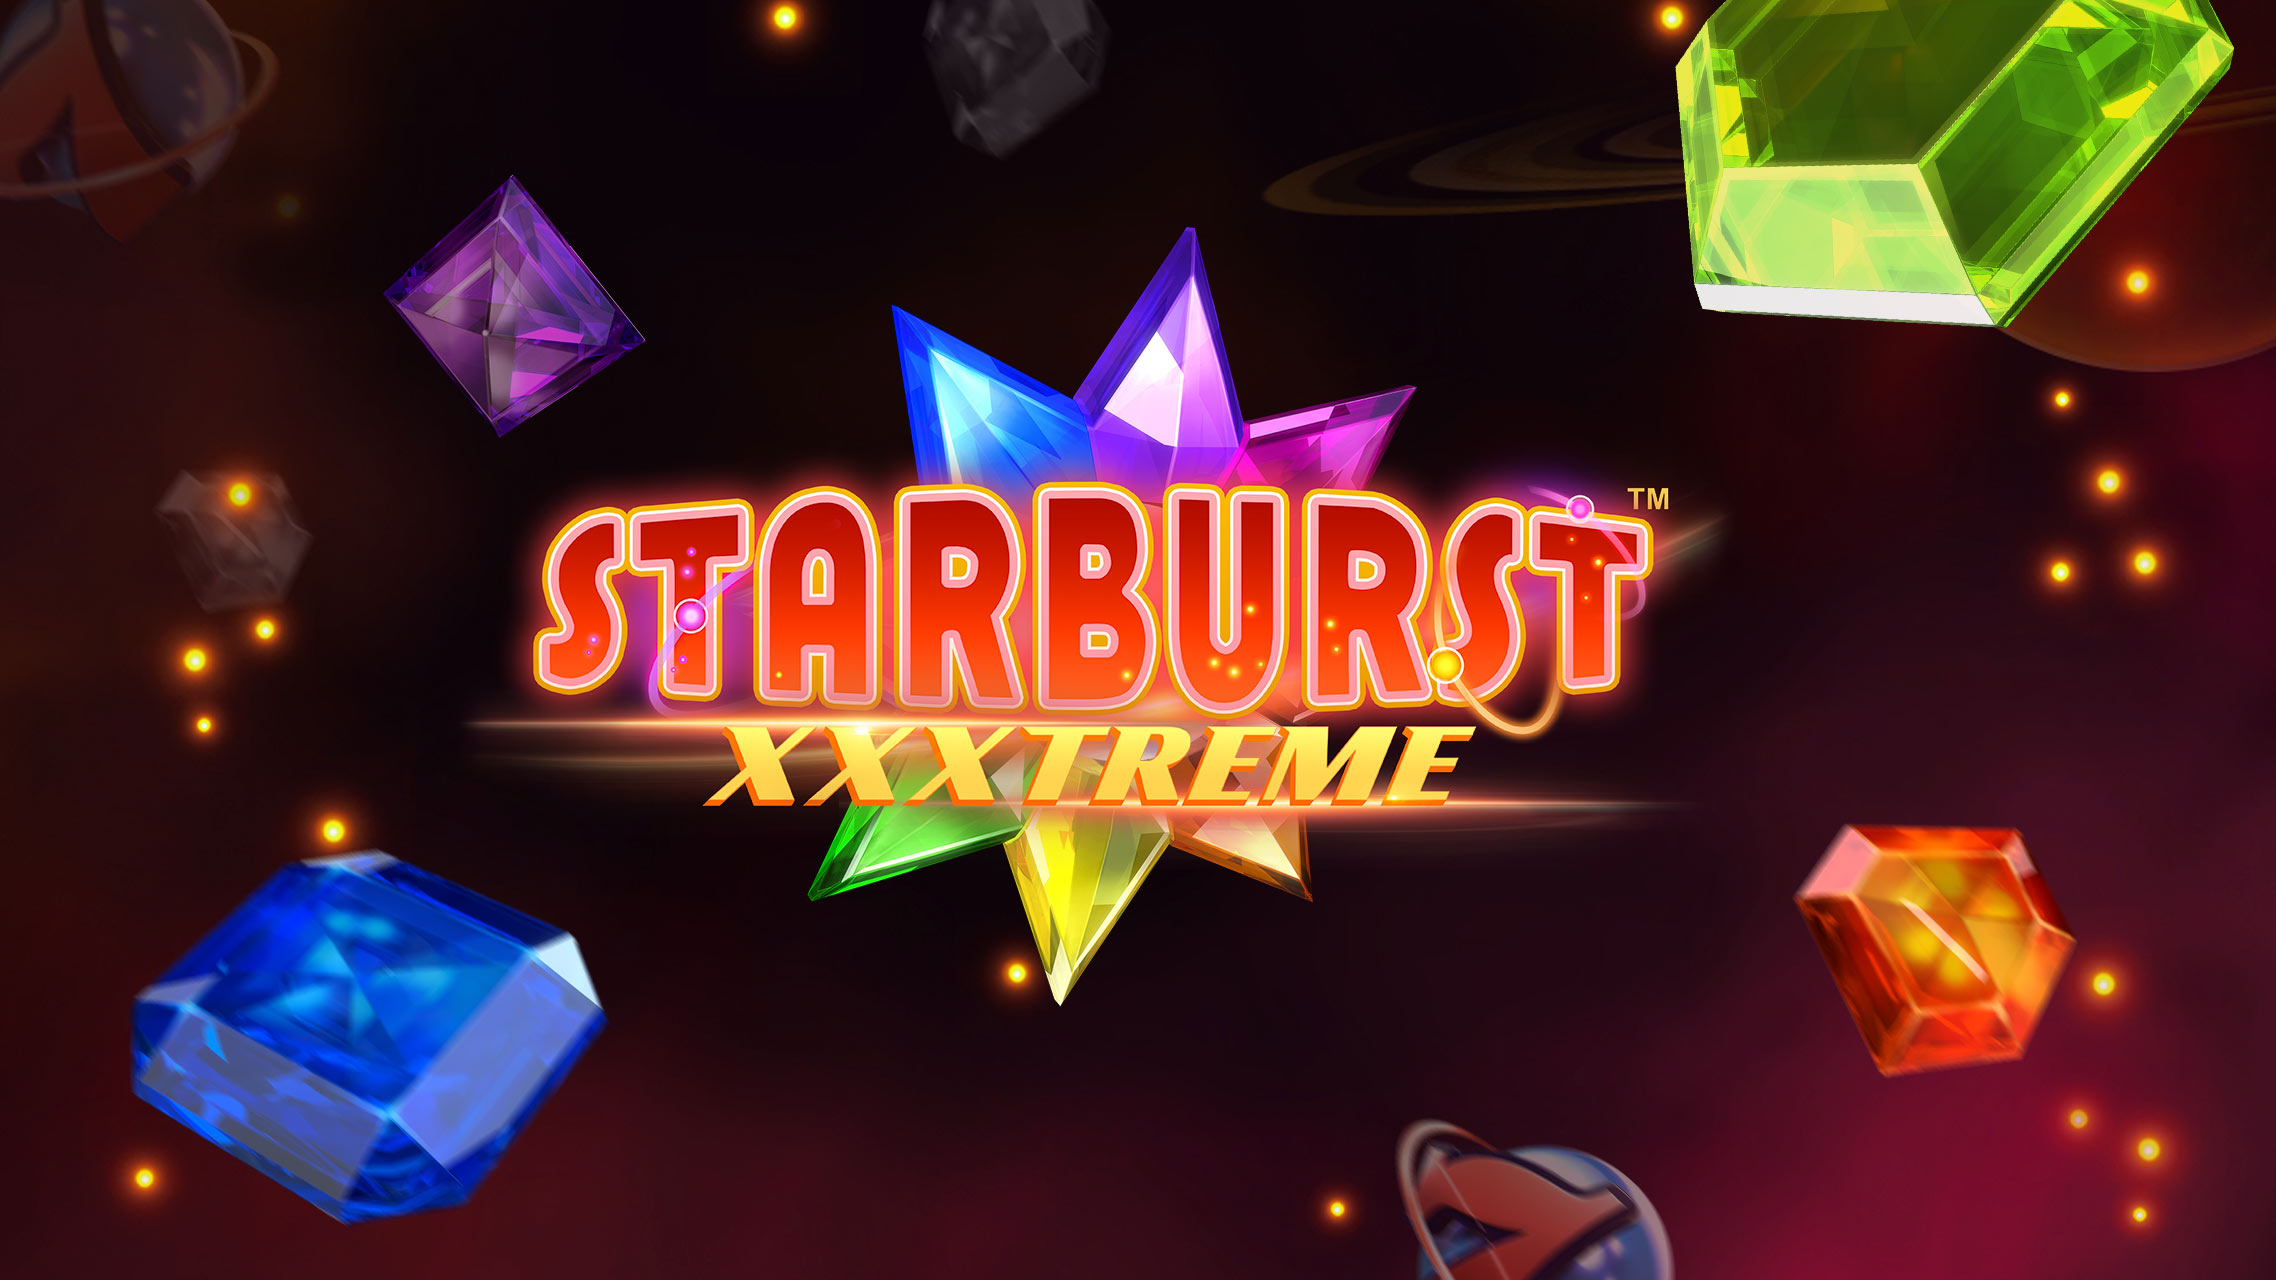 starburst-xxxtreme-slot-review